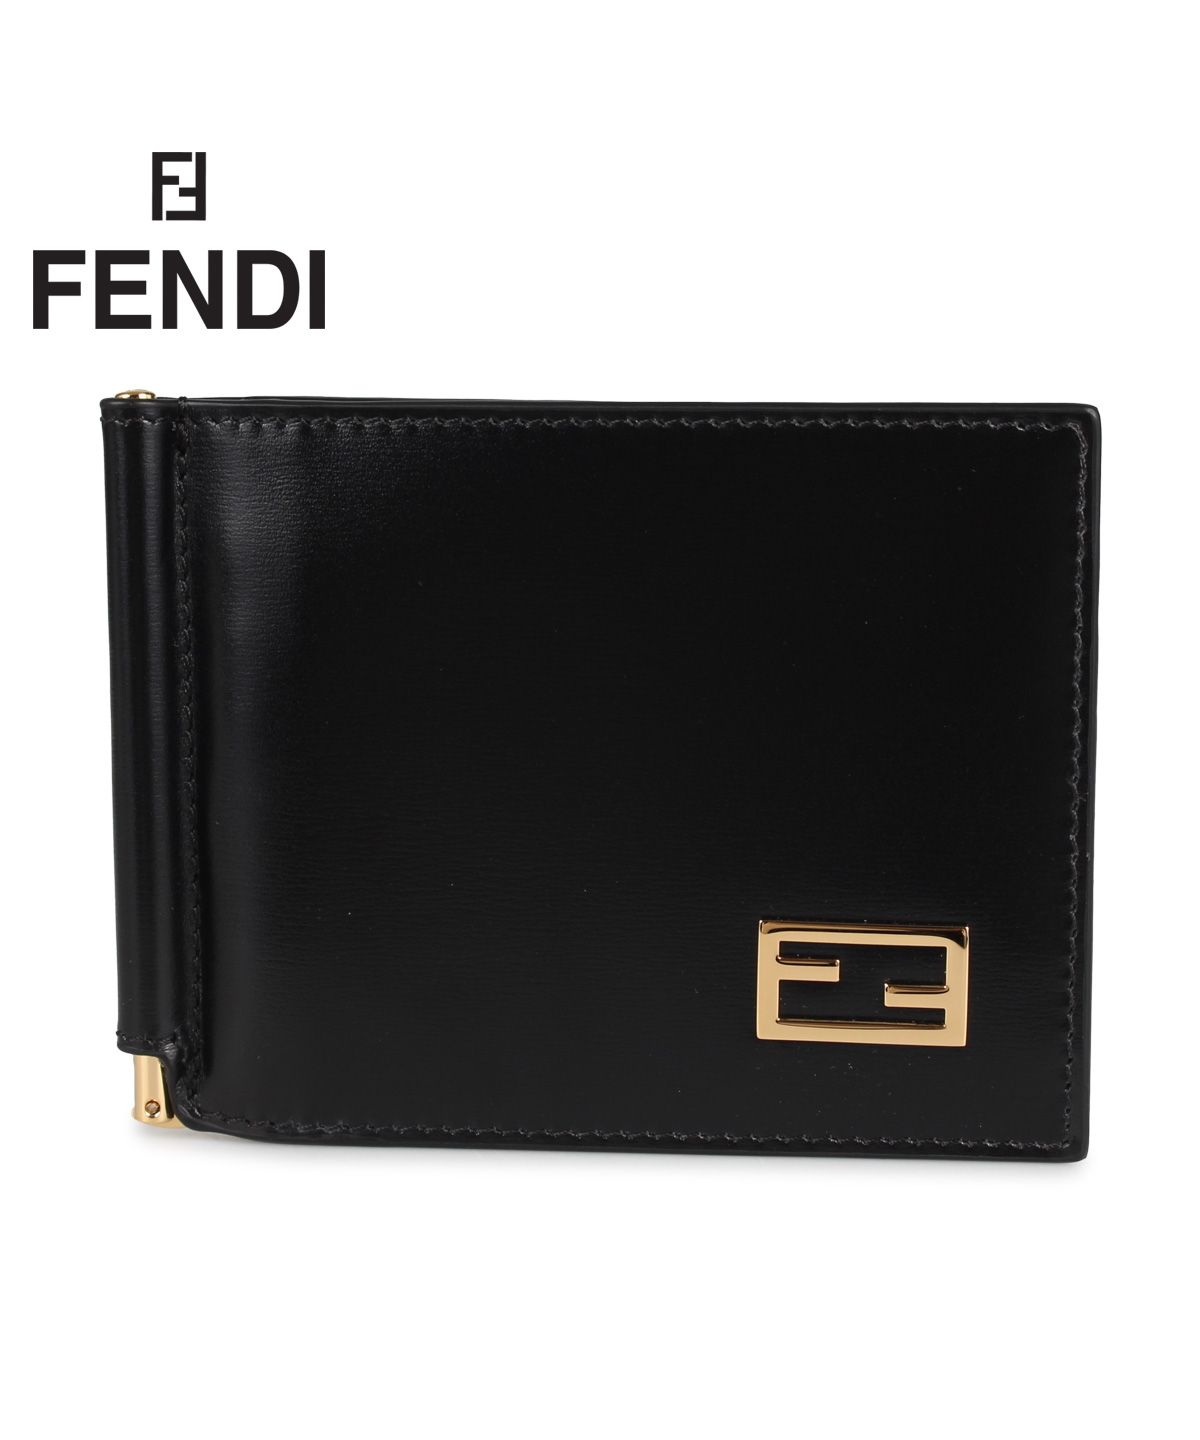 フェンディ FENDI 財布 二つ折り メンズ レディース イタリア製 WALLET ブラック 黒 7M0281AC91